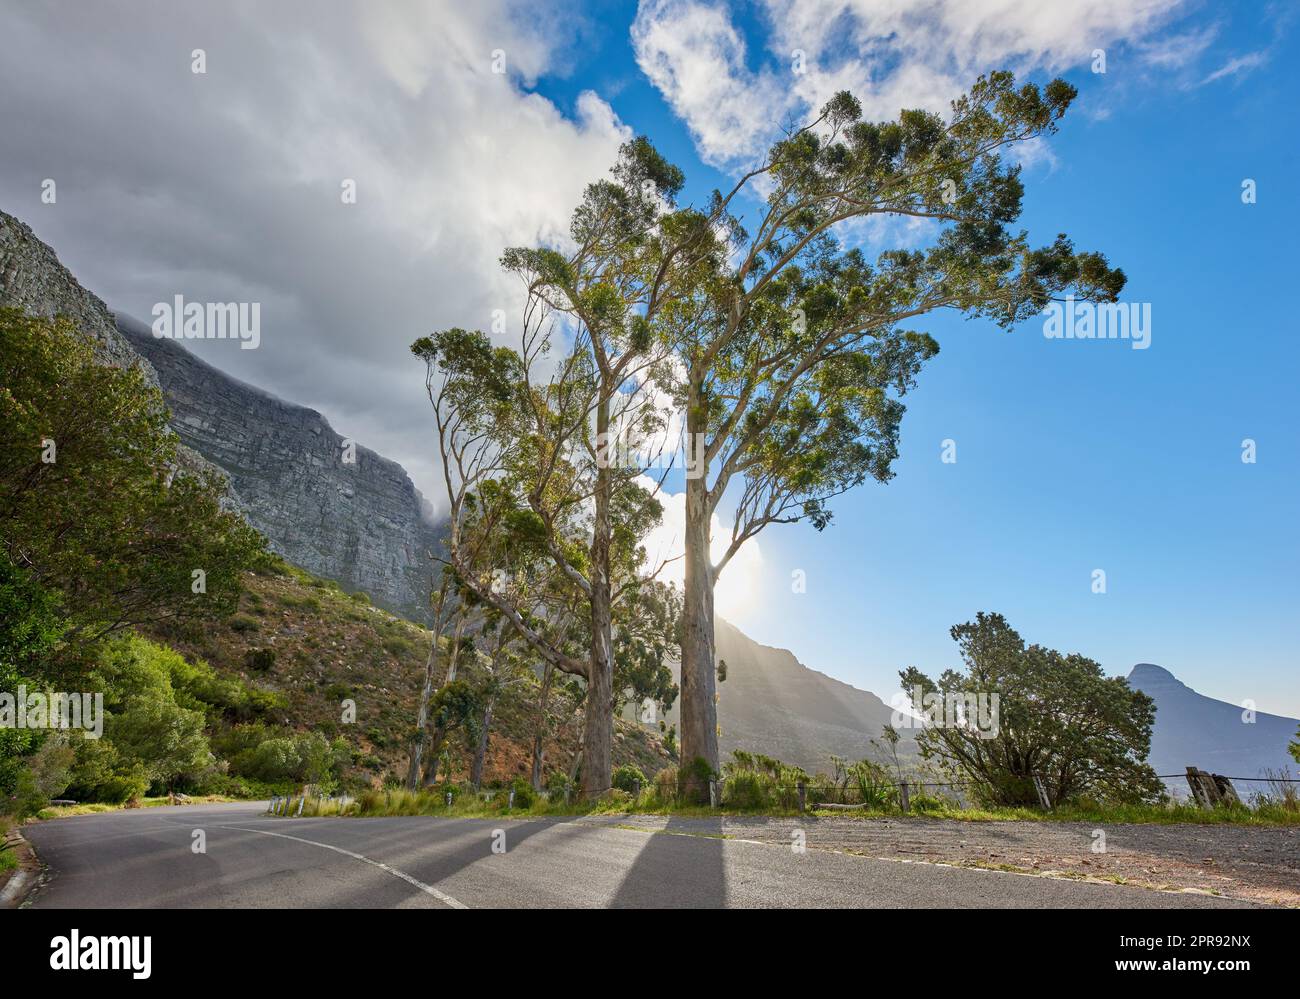 Eine Straße, die zum Tafelberg in Kapstadt, Südafrika, führt, vor dem blauen Himmel Kopierraum an einem sonnigen Morgen. Eine Autobahn entlang einer friedlichen Berglandschaft mit malerischer Aussicht auf üppige grüne Büsche Stockfoto